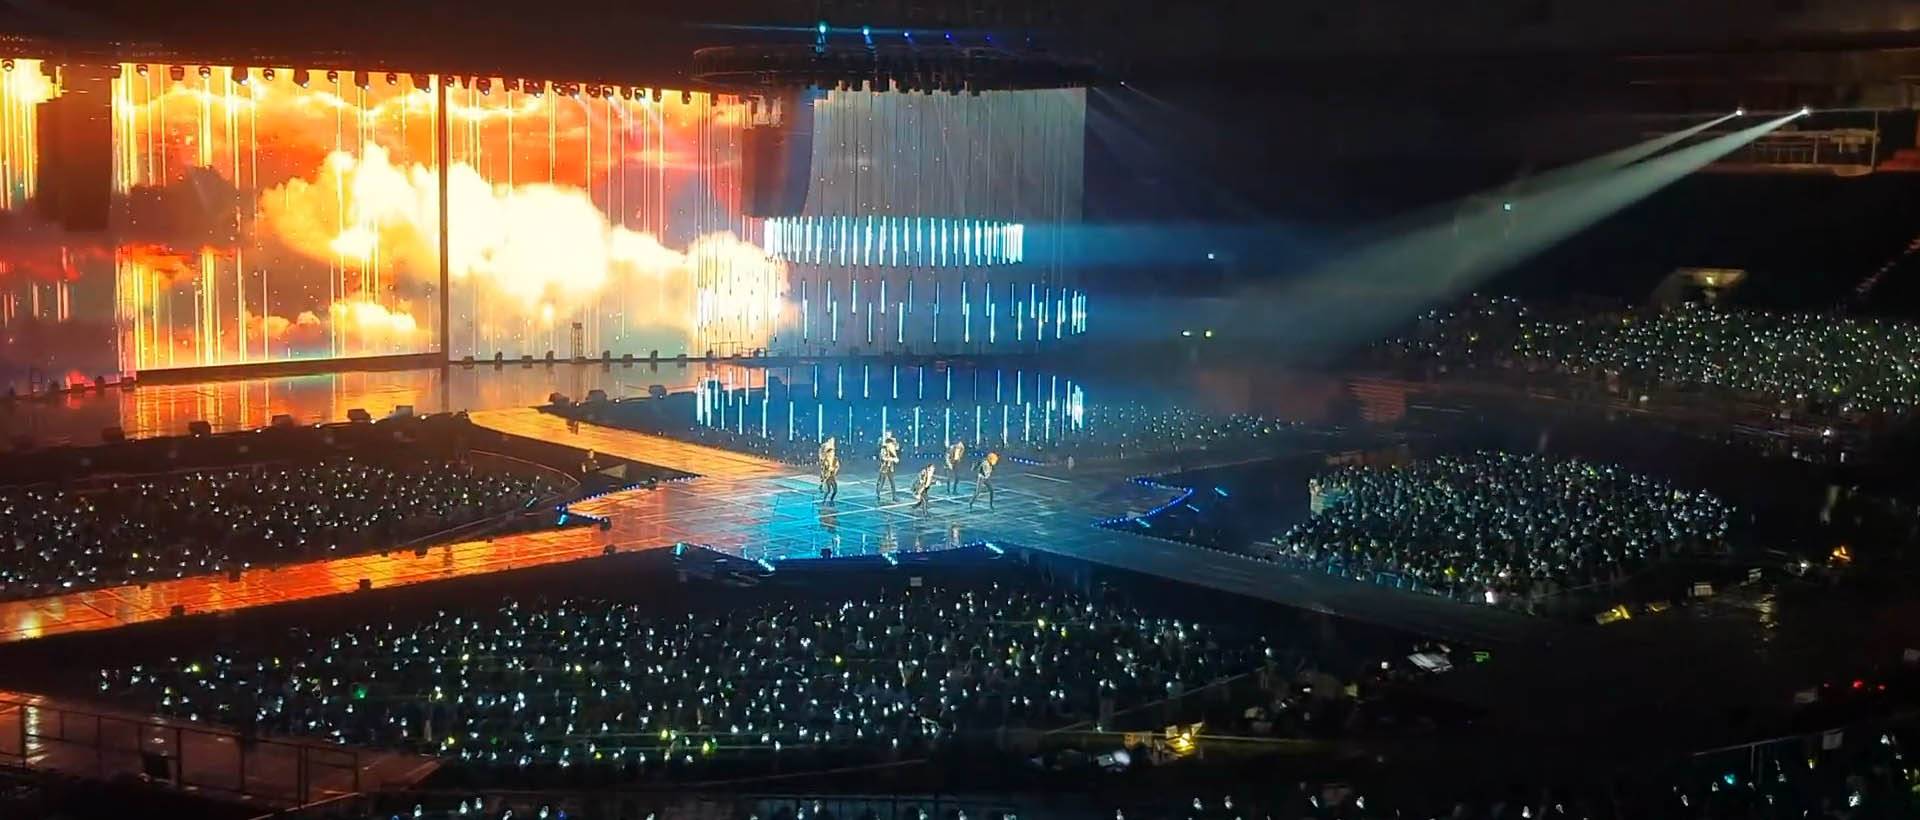 GOT7 2019 WORLD TOUR "Keep SPINNING" SPOT در سئول، کره (2)